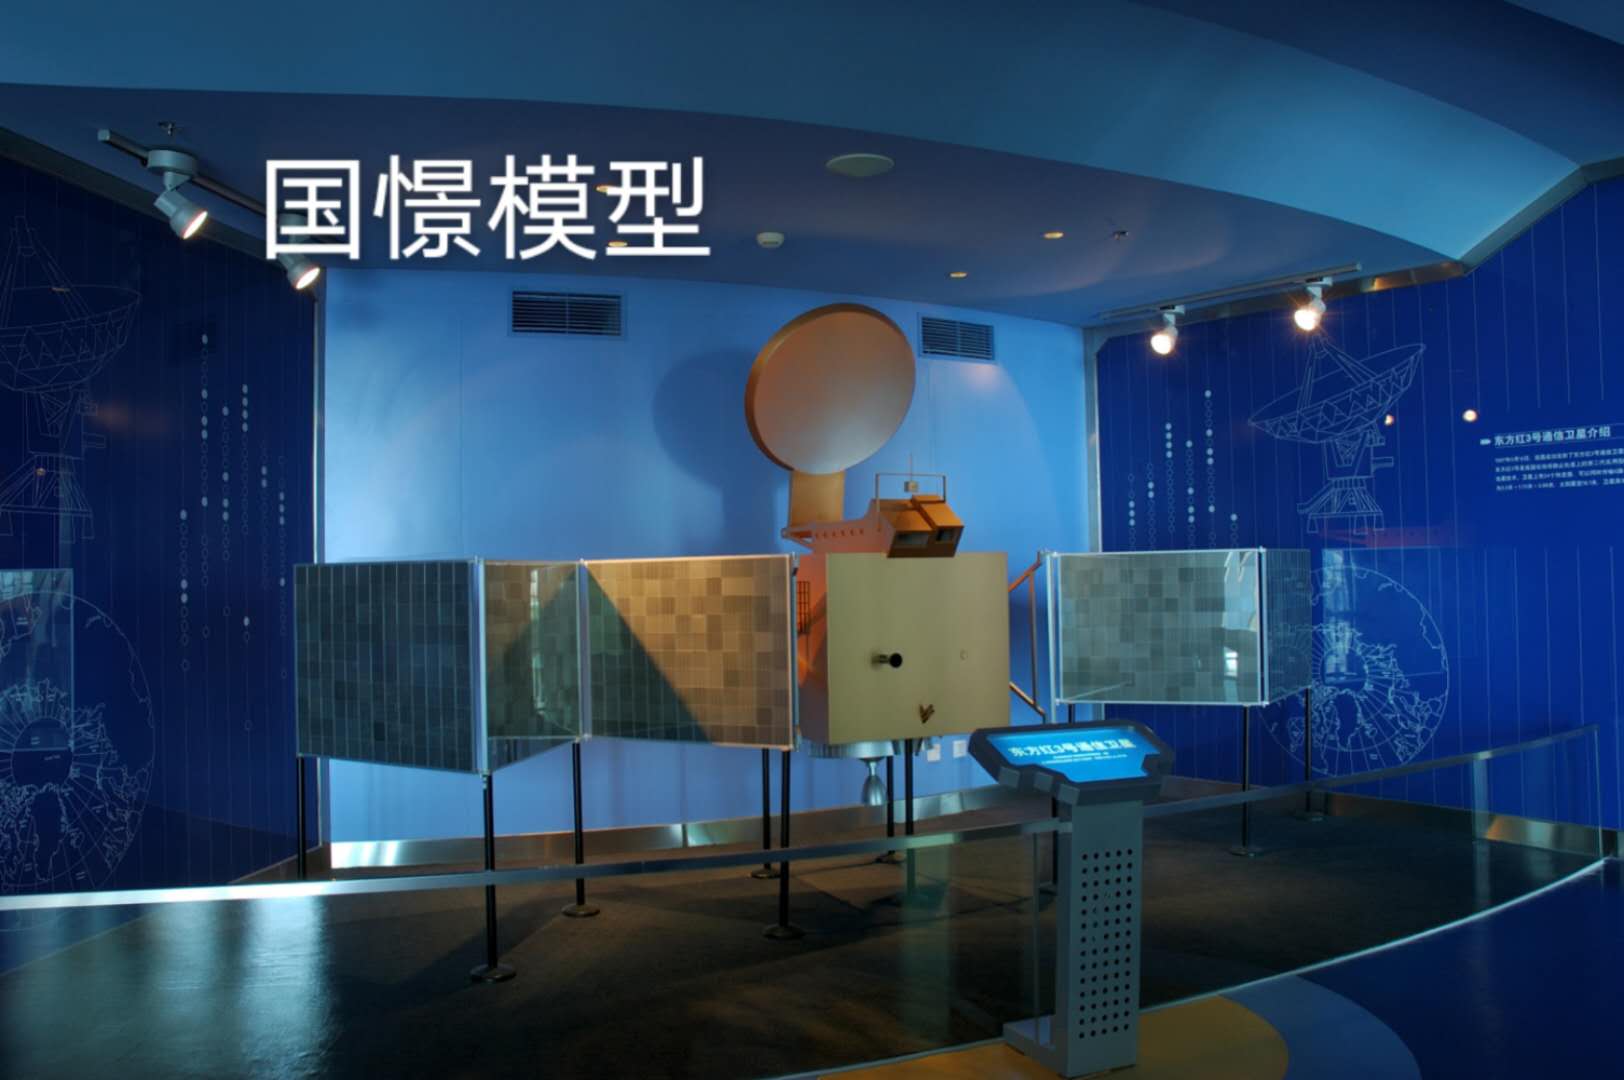 夹江县航天模型